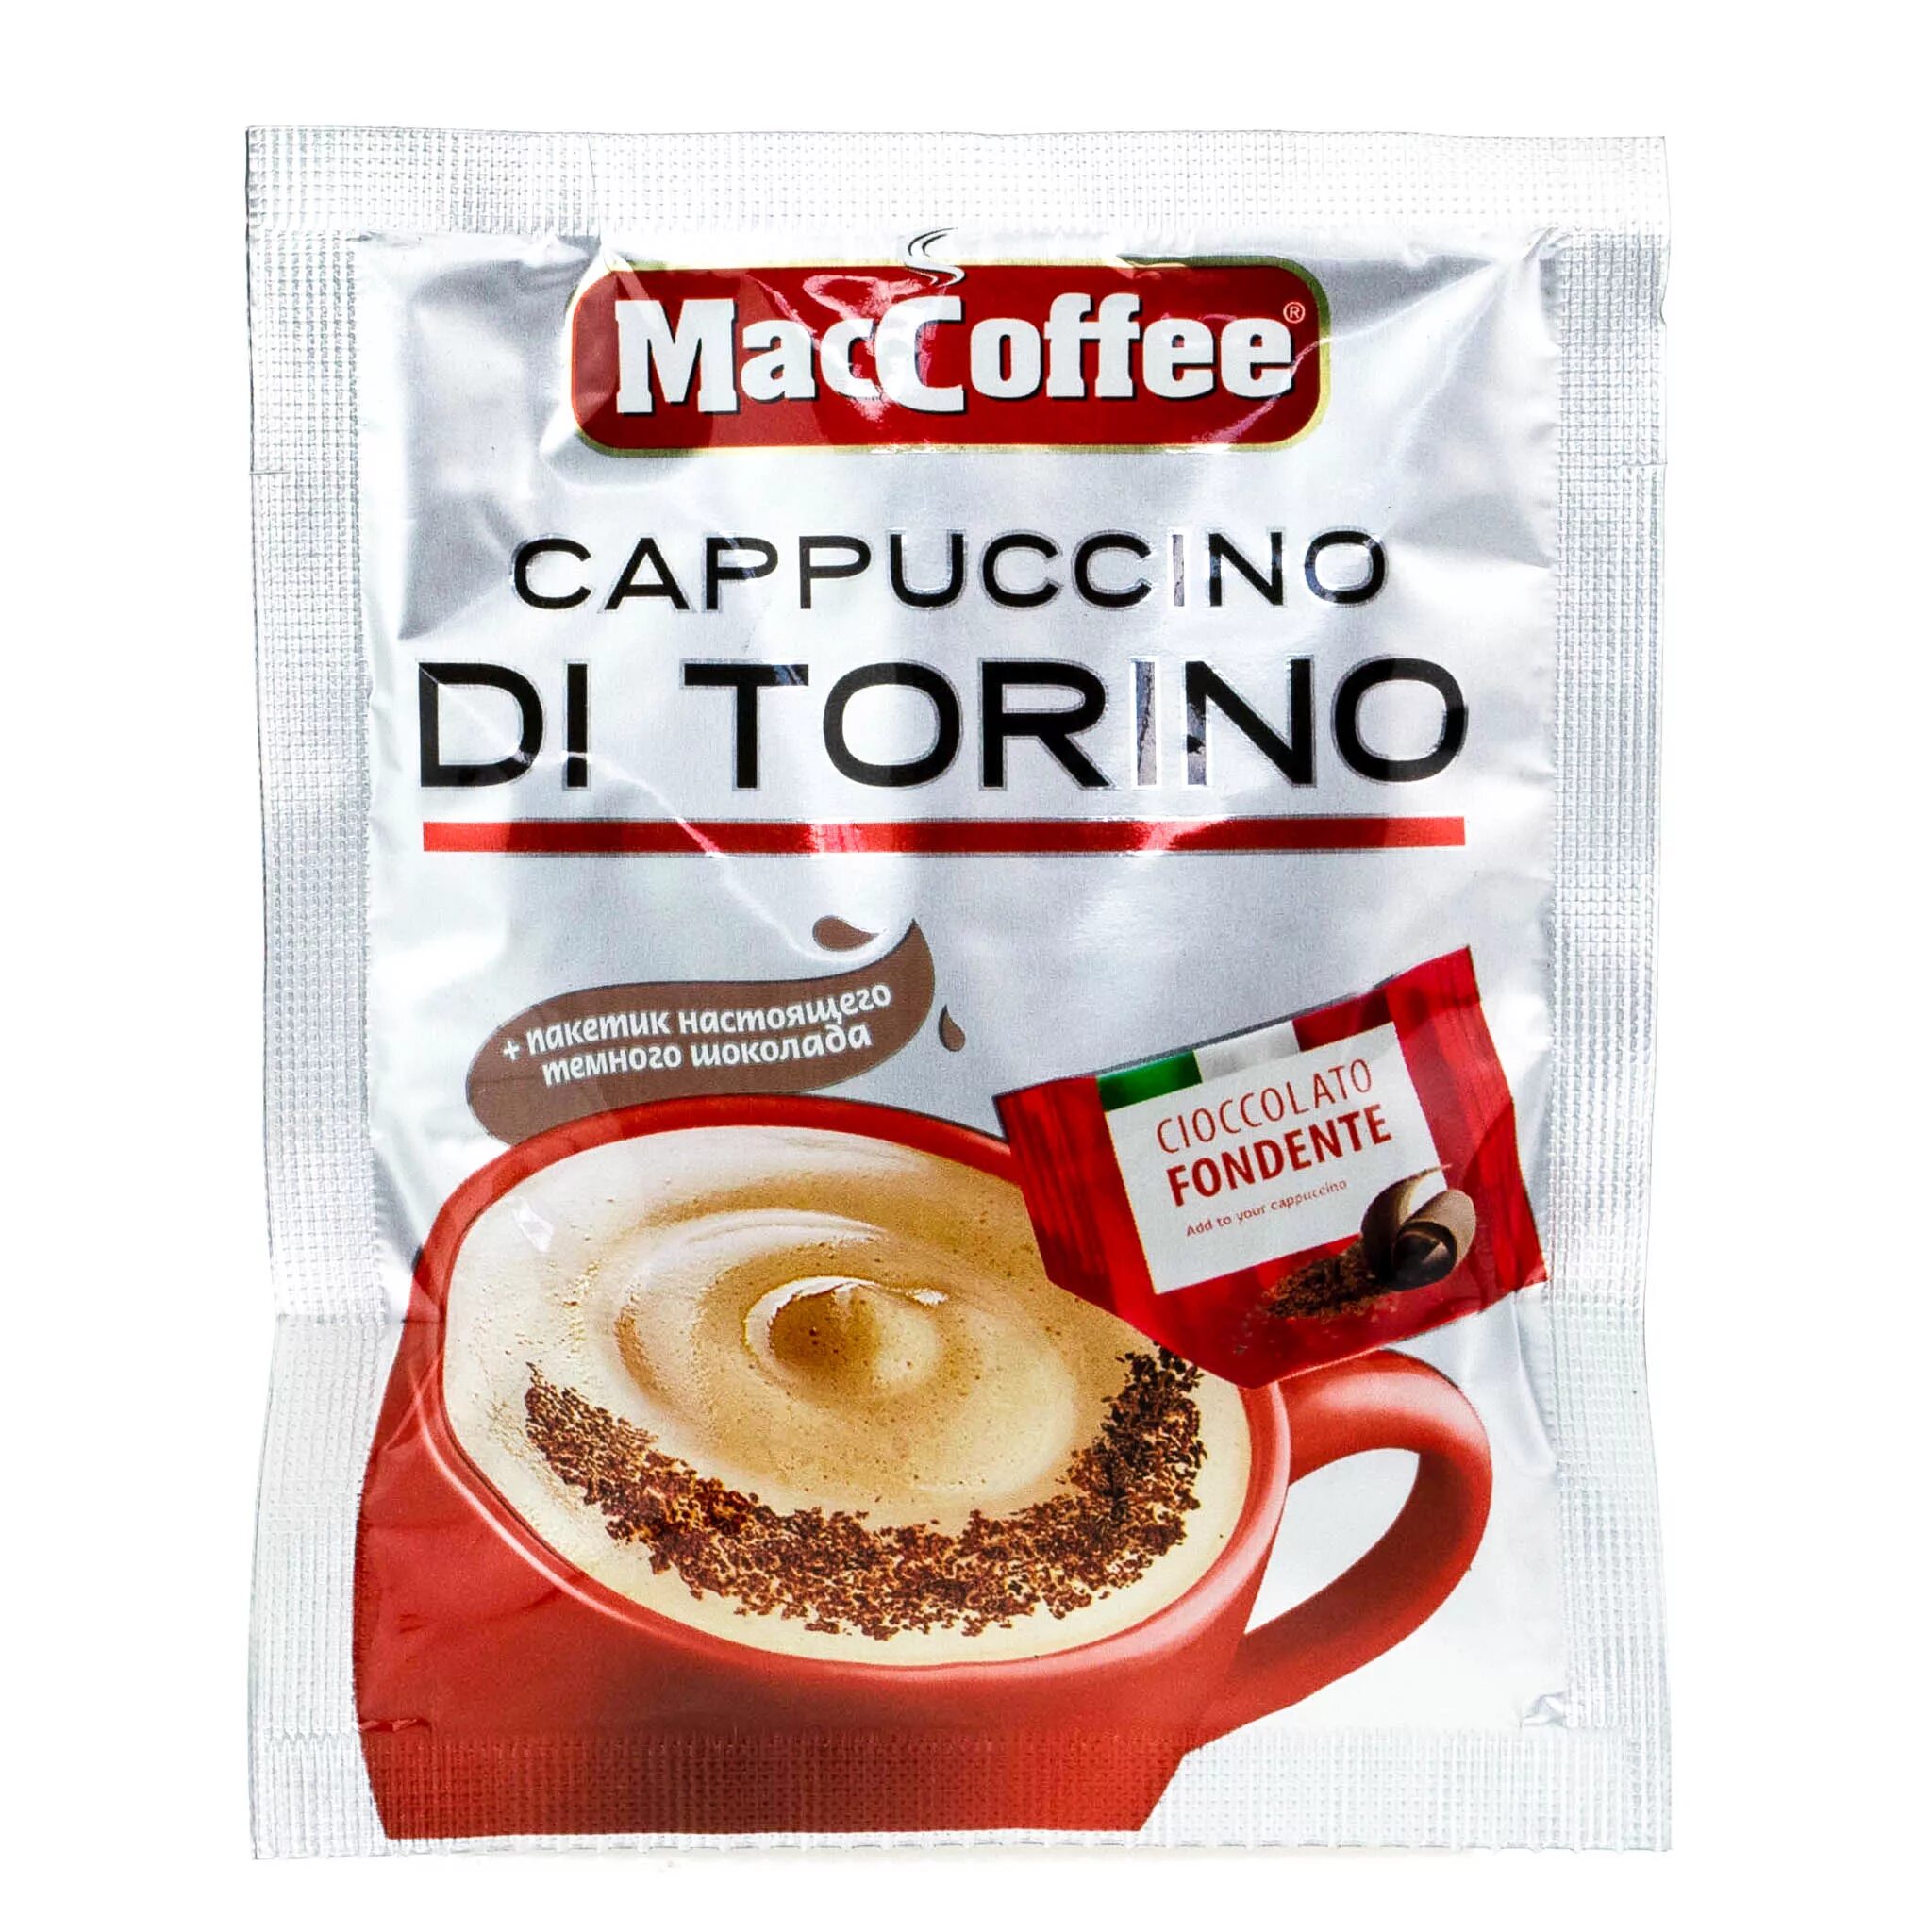 Кофе 3 в 1 Маккофе. Кофе 3 в 1 Маккофе капучино. Маккофе 3 в 1 капучино di Torino. Растворимый кофе MACCOFFEE Cappuccino.